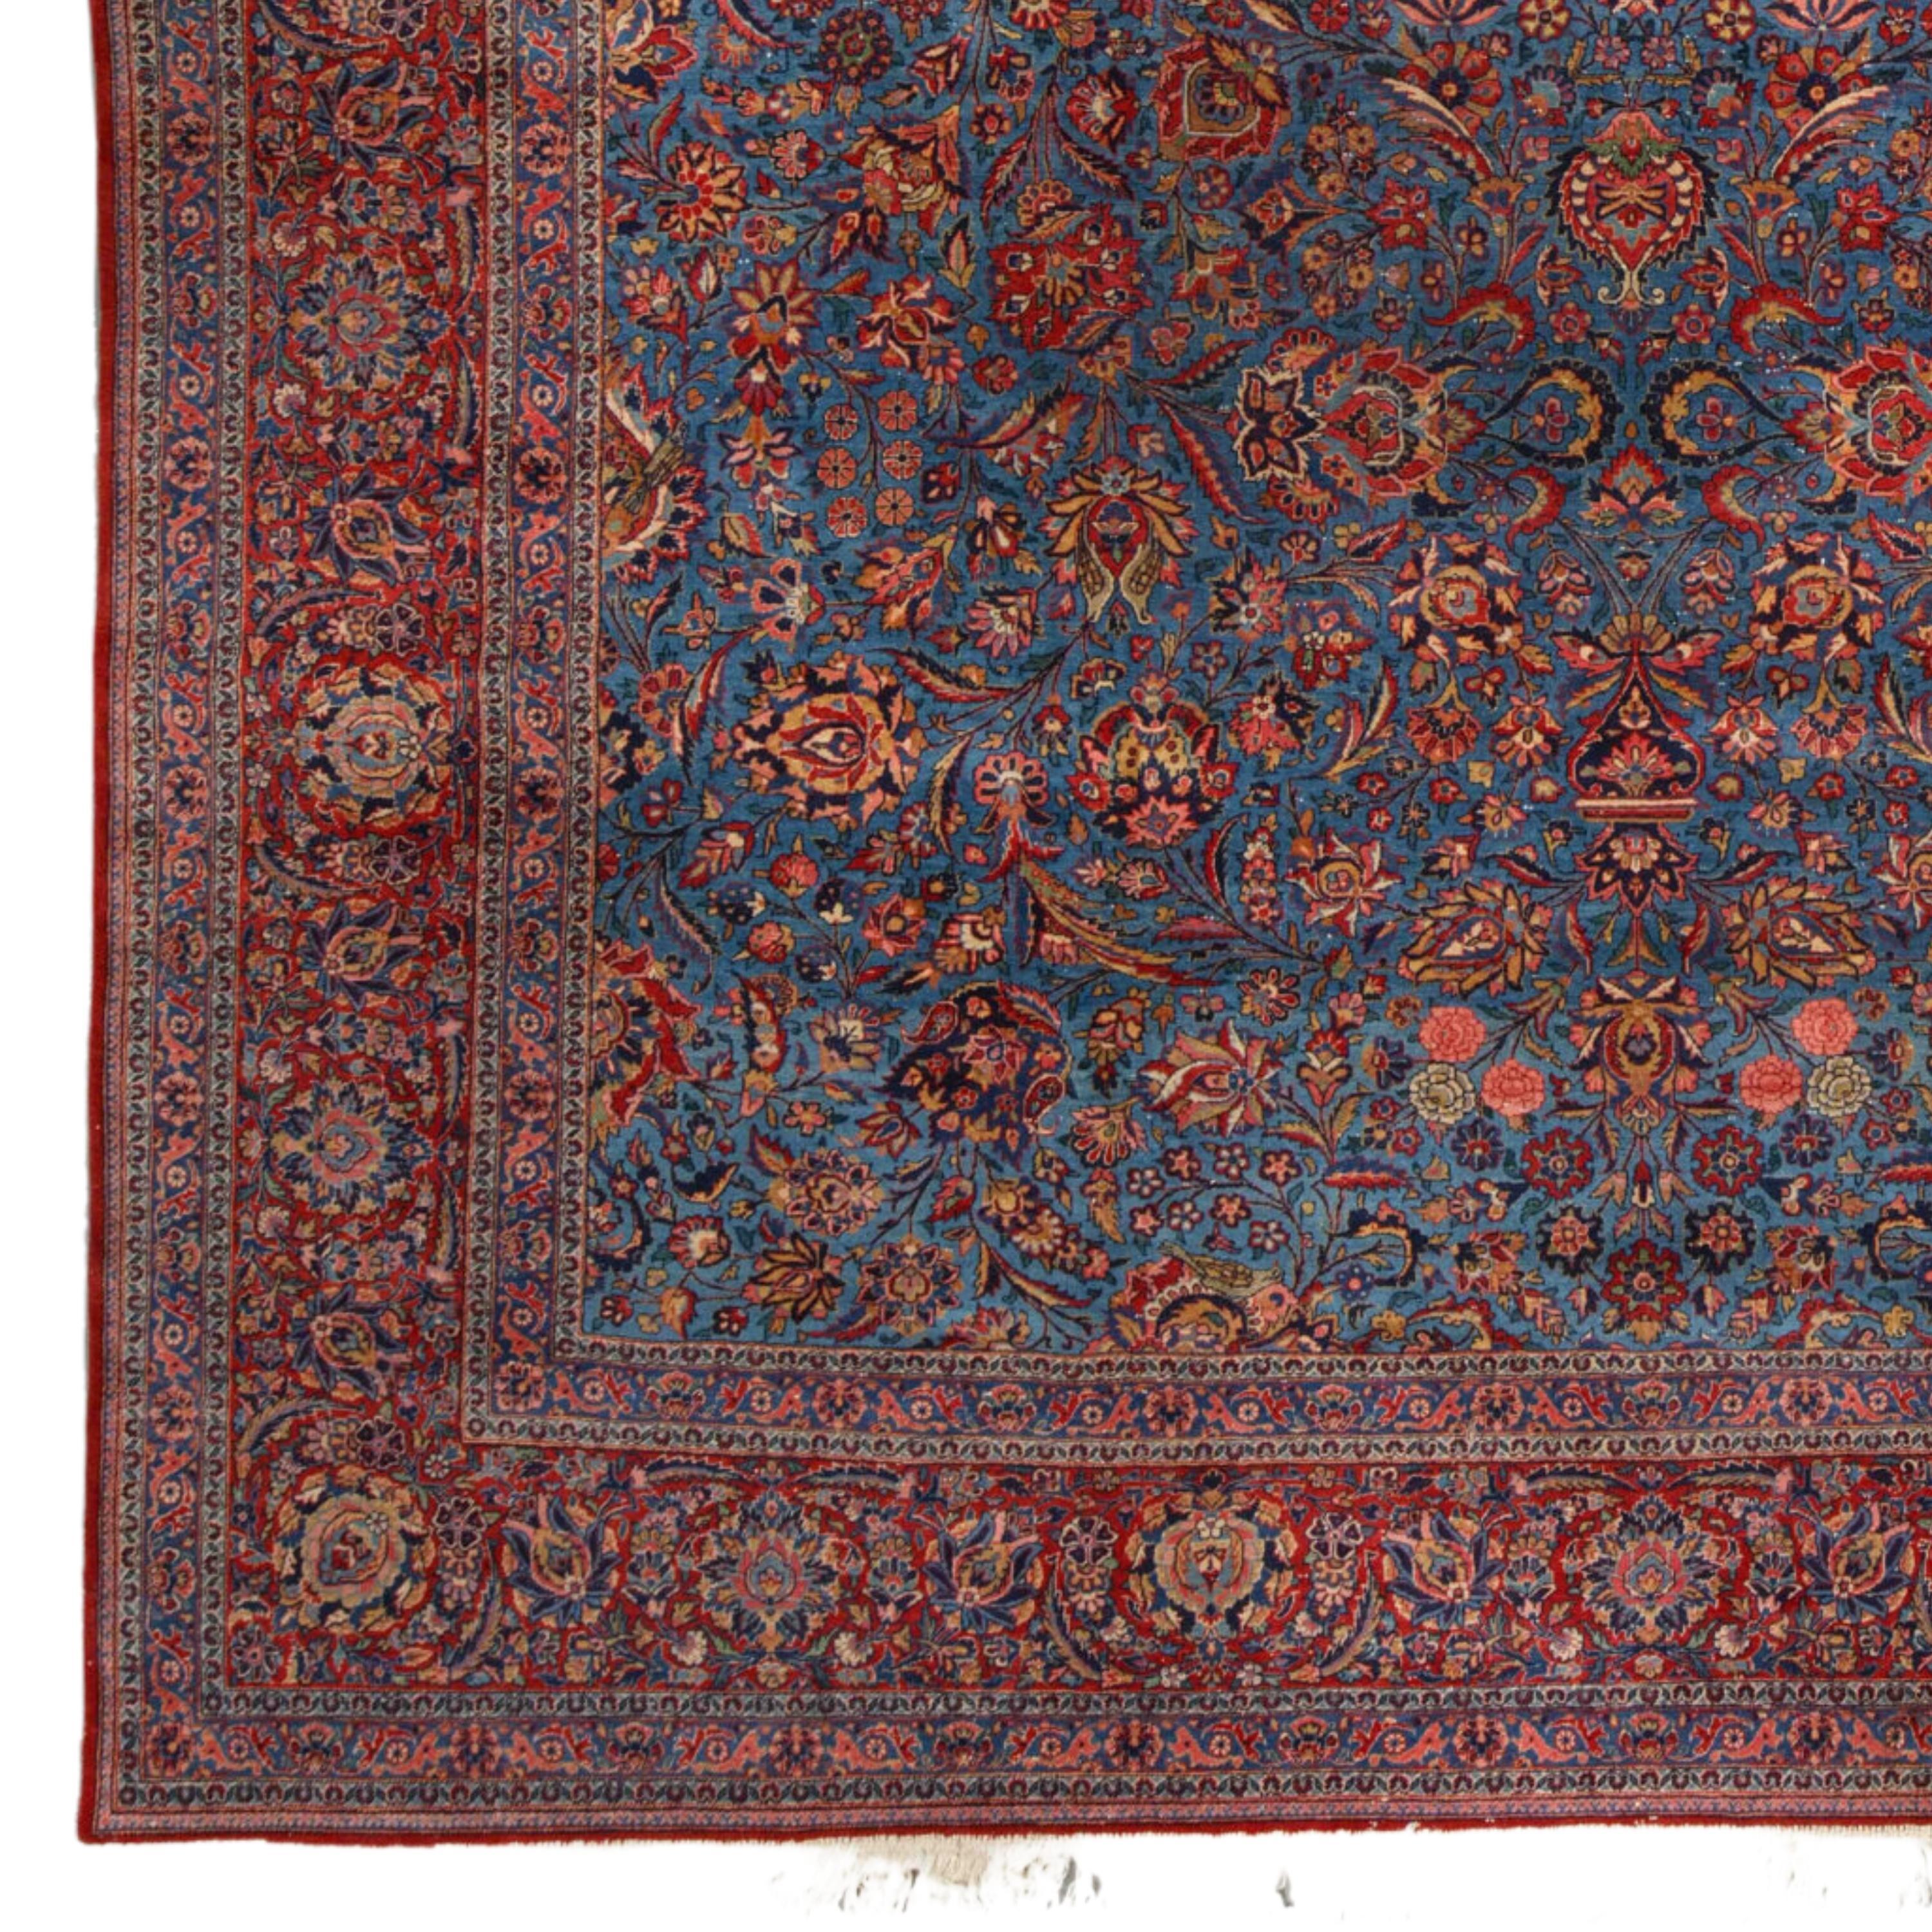 Tapis ancien de Kashan 310x445 cm (10,17x14,59 ft) Tapis de Kashan de la fin du 19e siècle

On ne sait rien des tapis de Kashan entre le XVIIe et le XIXe siècle, mais à l'aube du XXe siècle, une importante production commerciale de tapis de velours